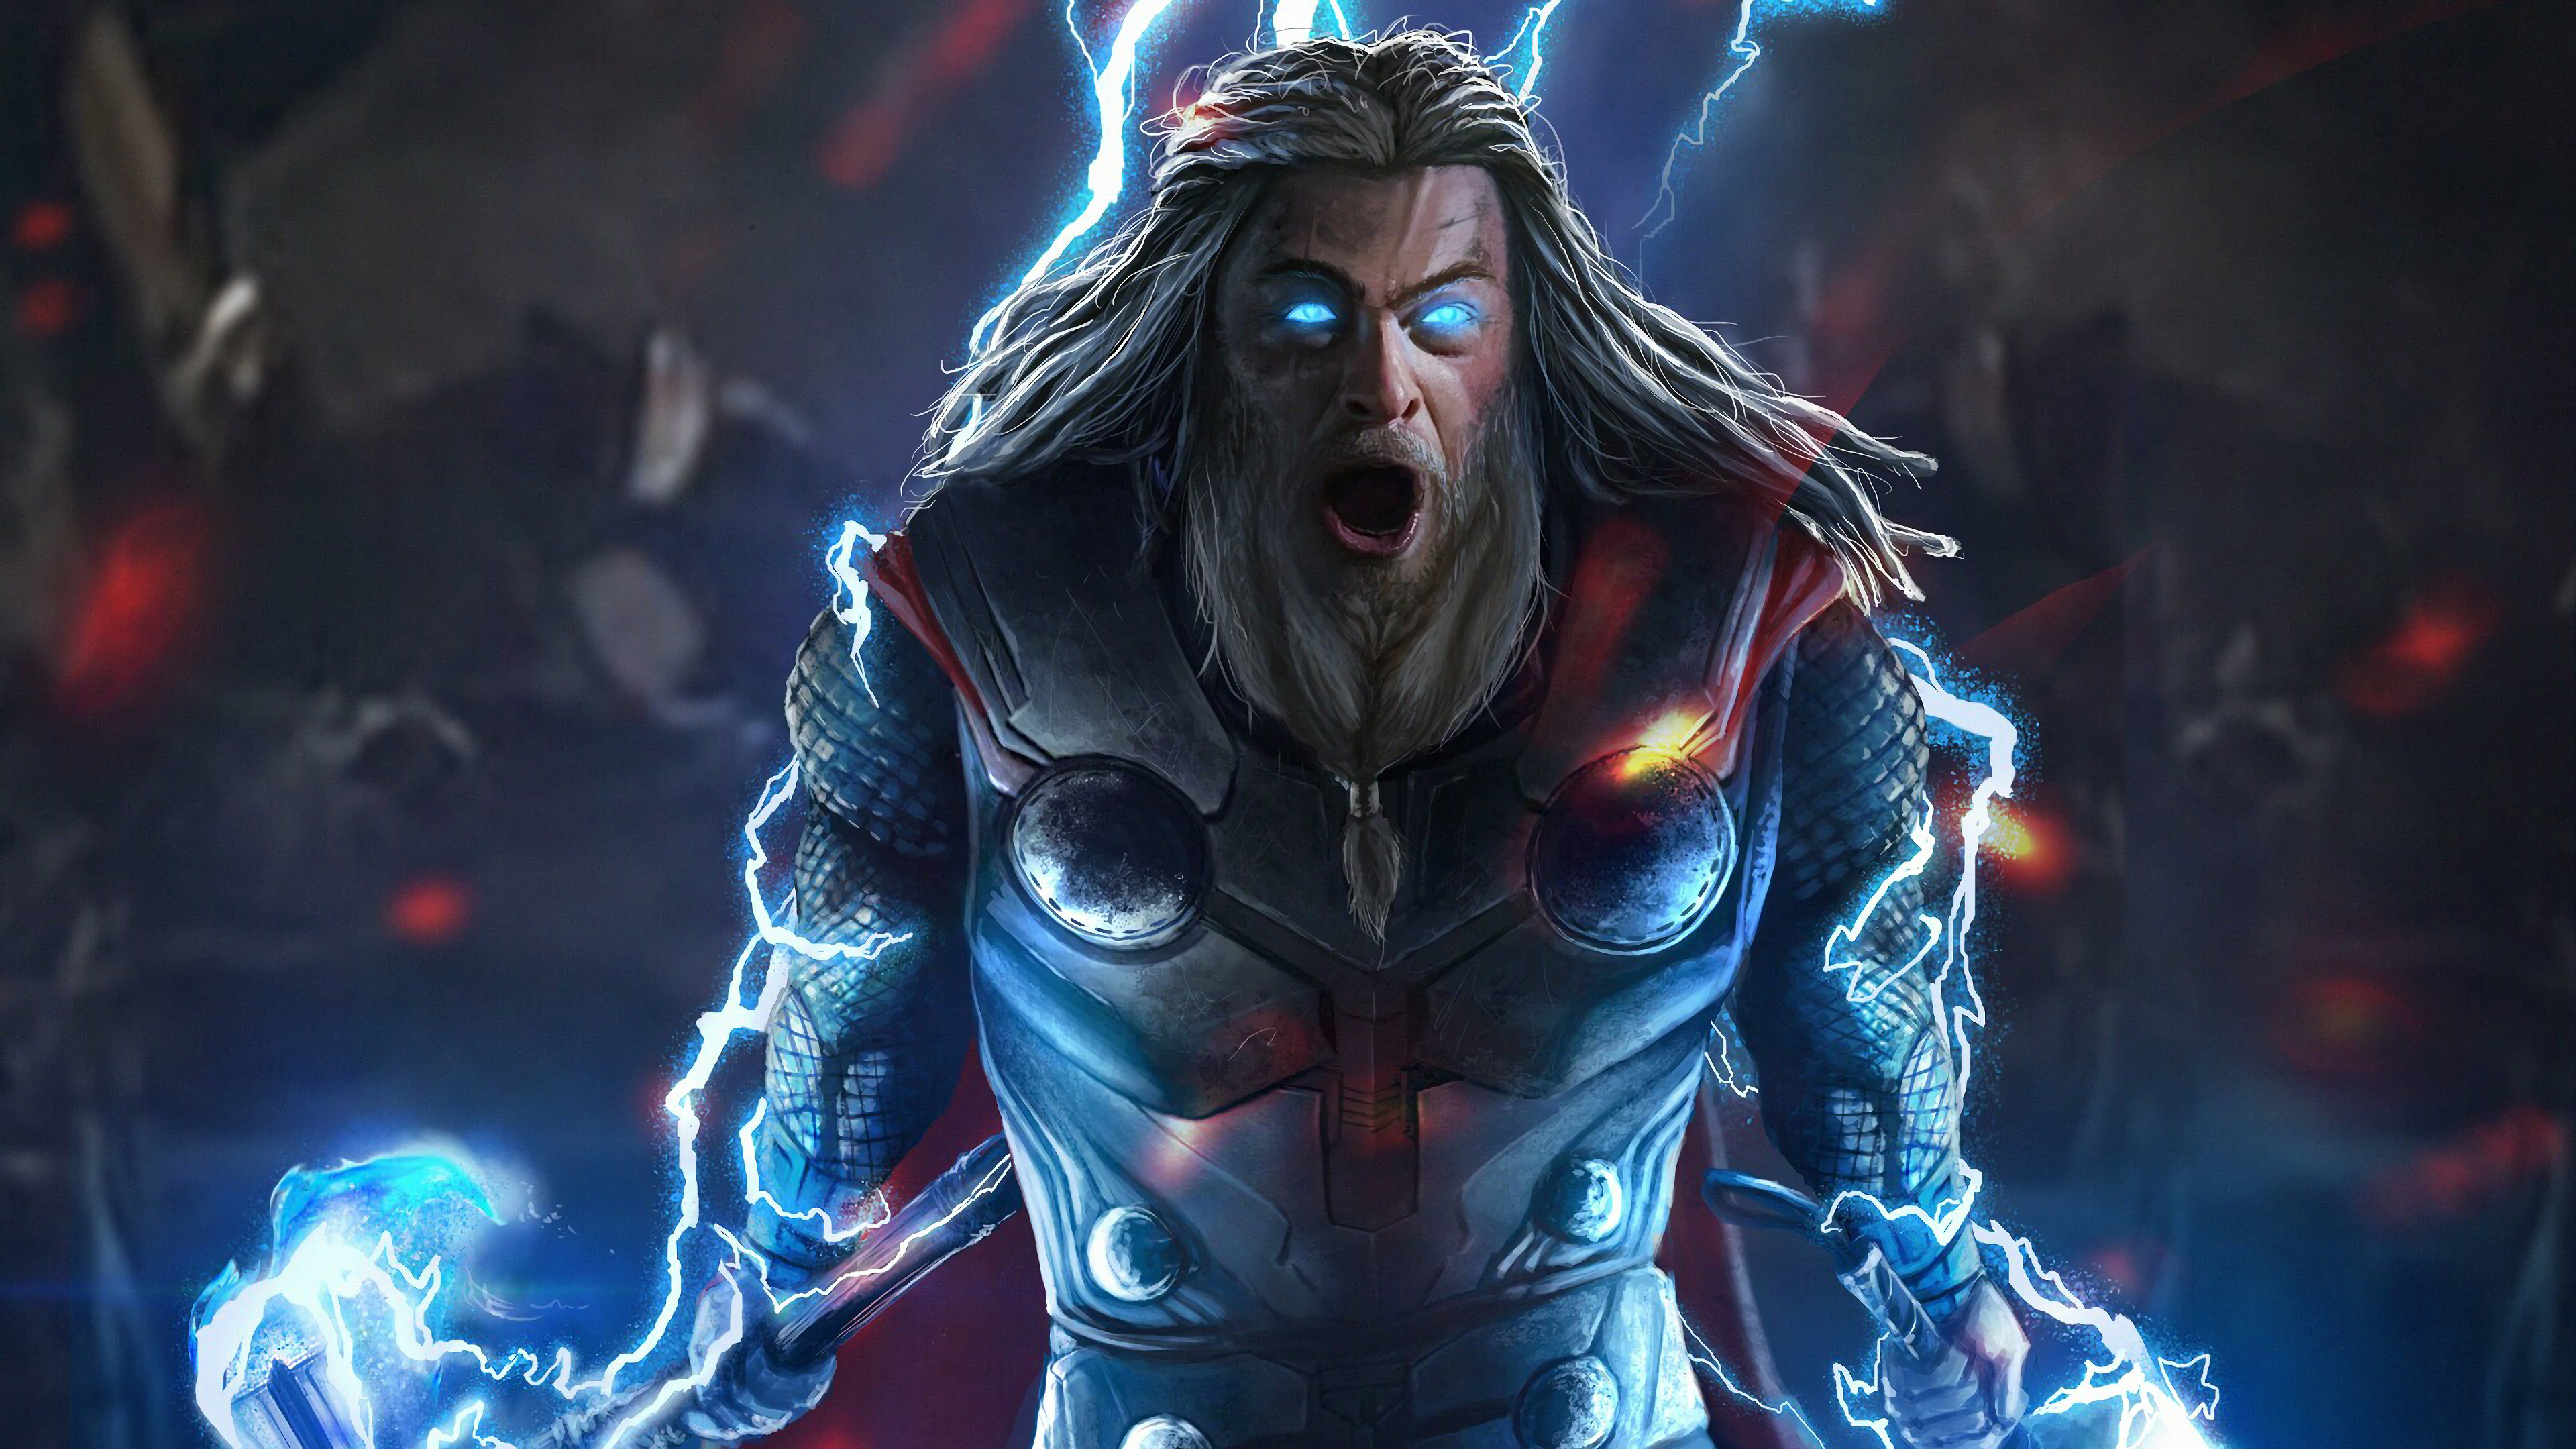 Thor Lightning Avengers Endgame 4k 179 Wallpaper Pc Desktop